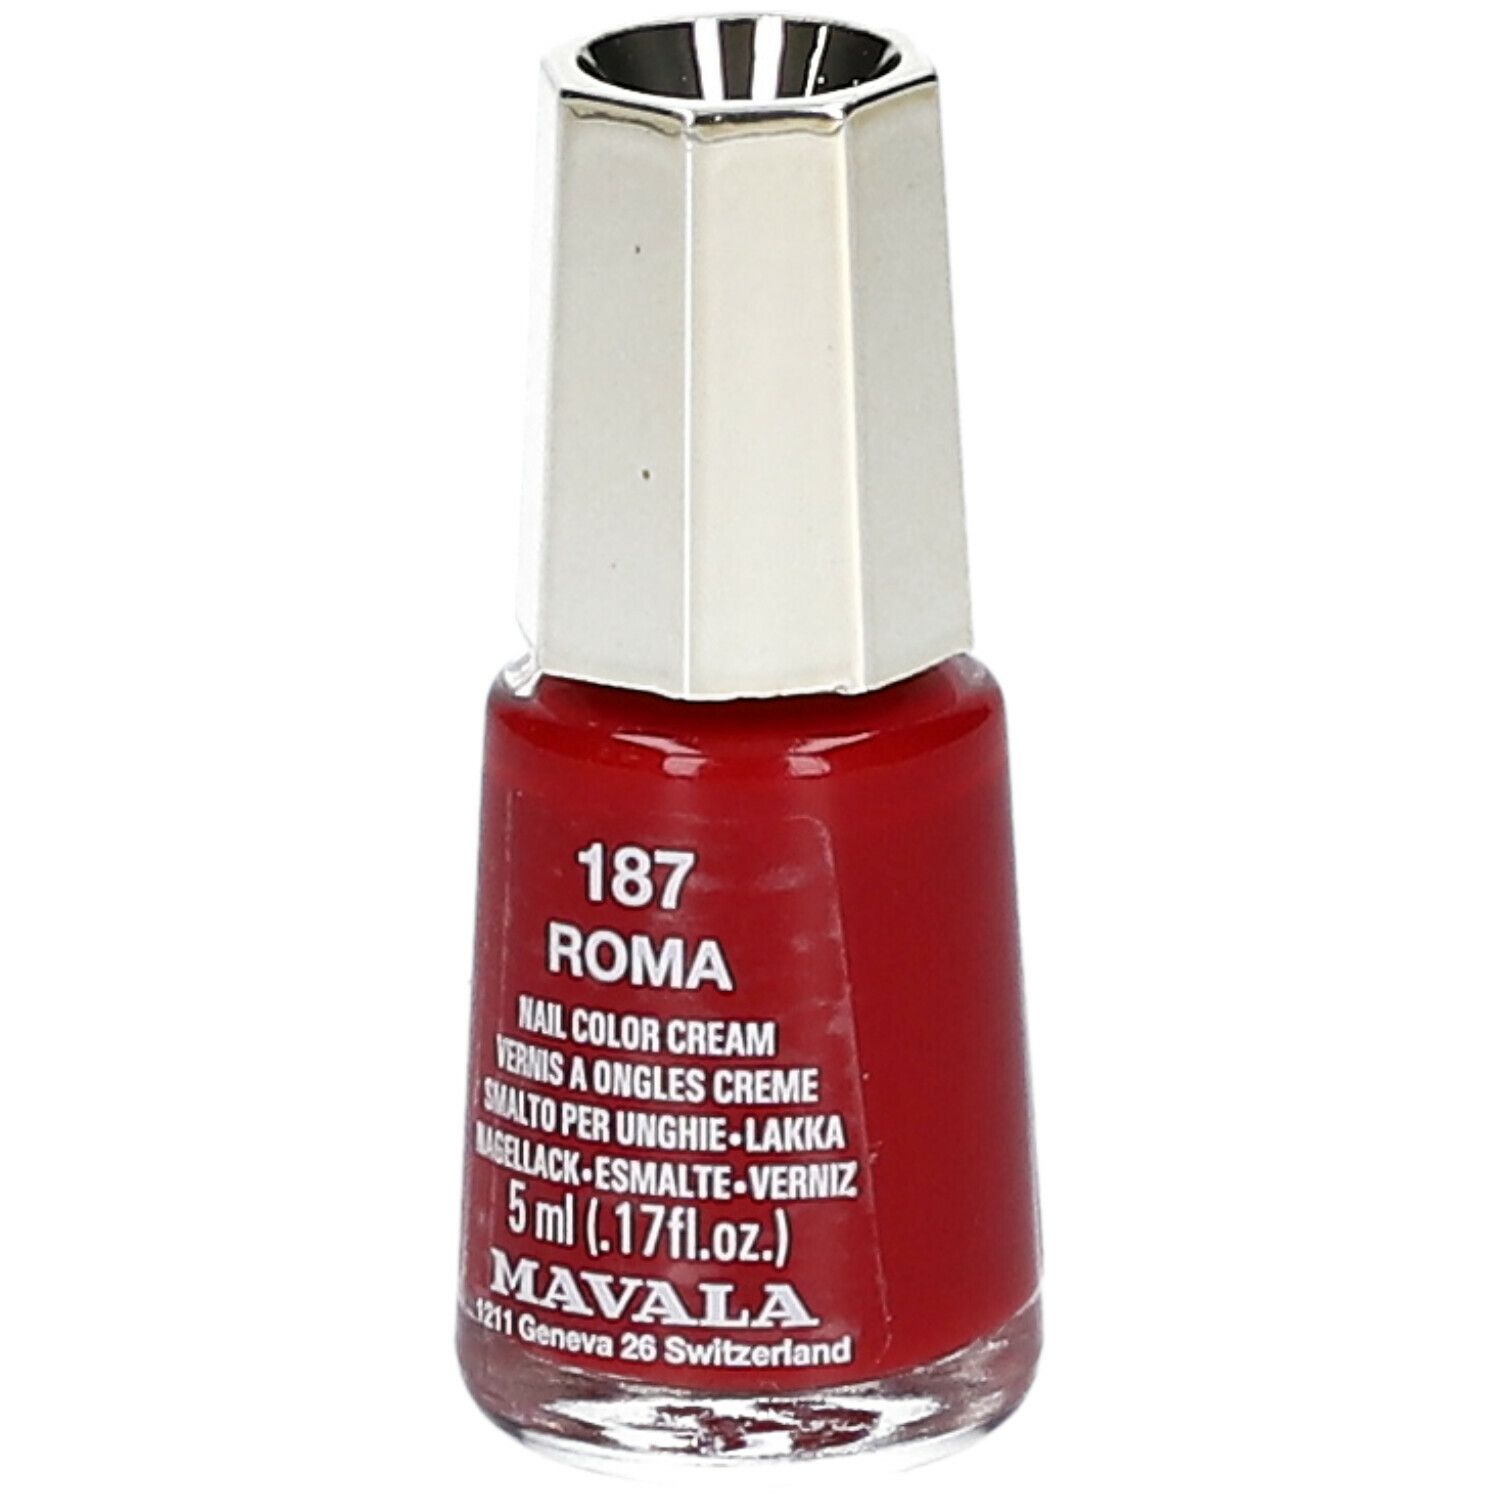 Mavala Mini Color vernis à ongles crème - Roma 187